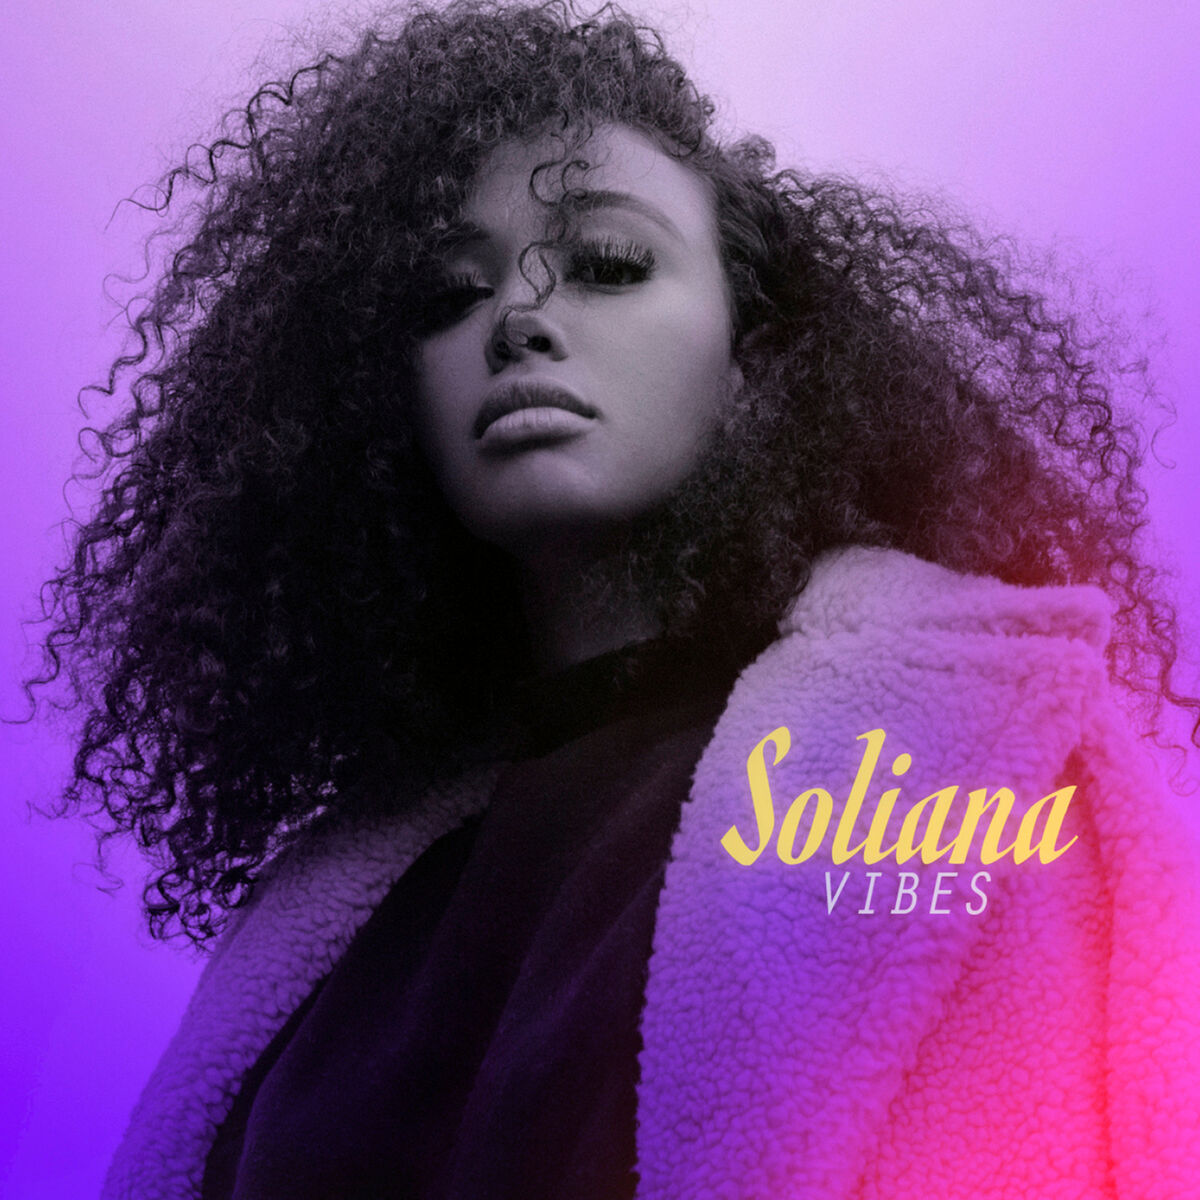 Soliana: albums